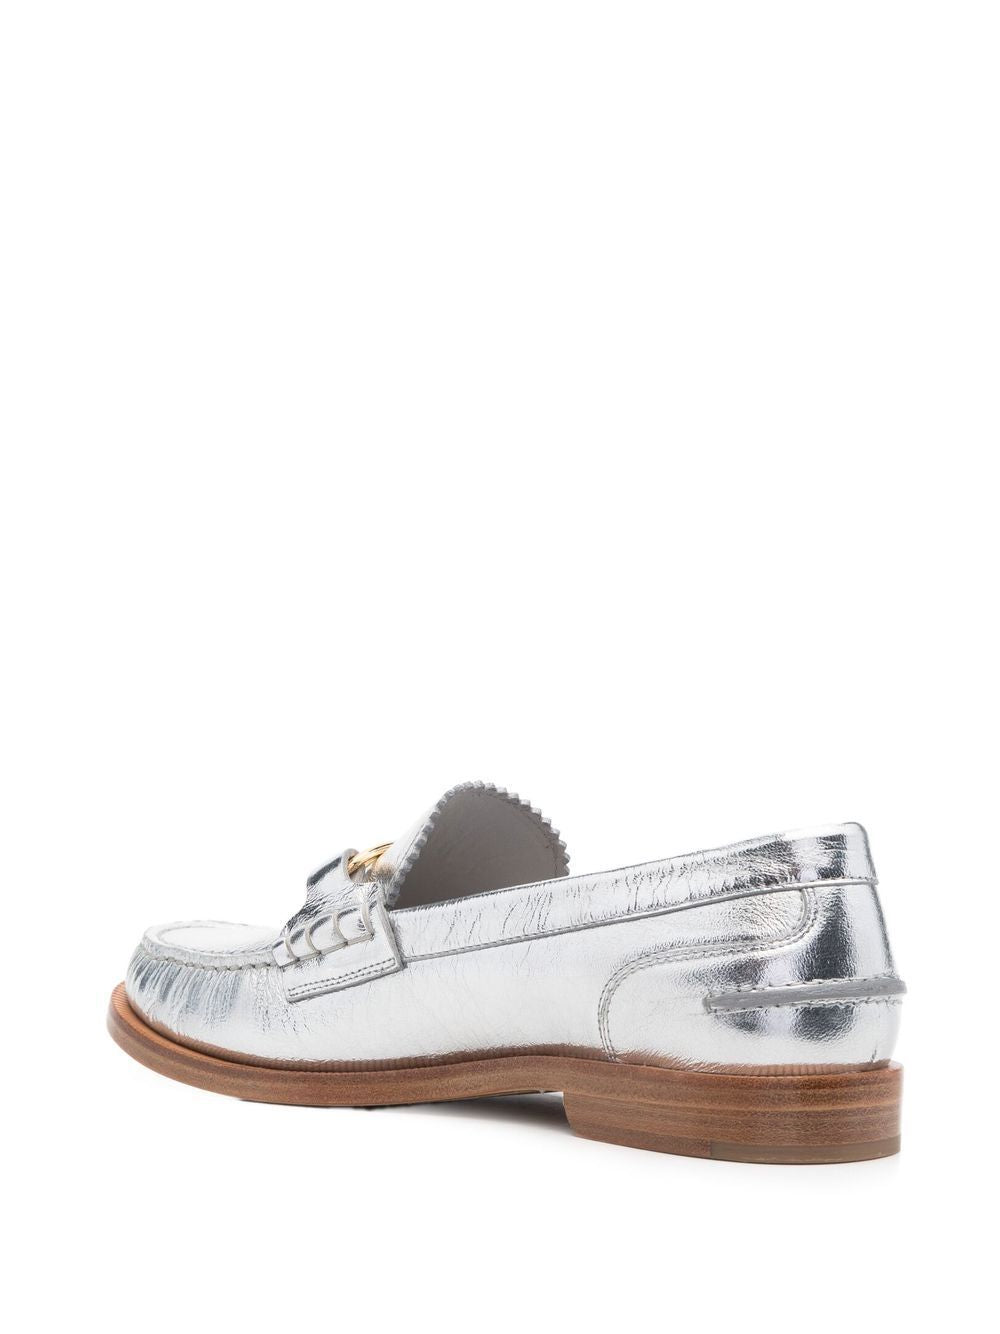 Shop Fendi Silver Metallic Slip On Loafers For Women